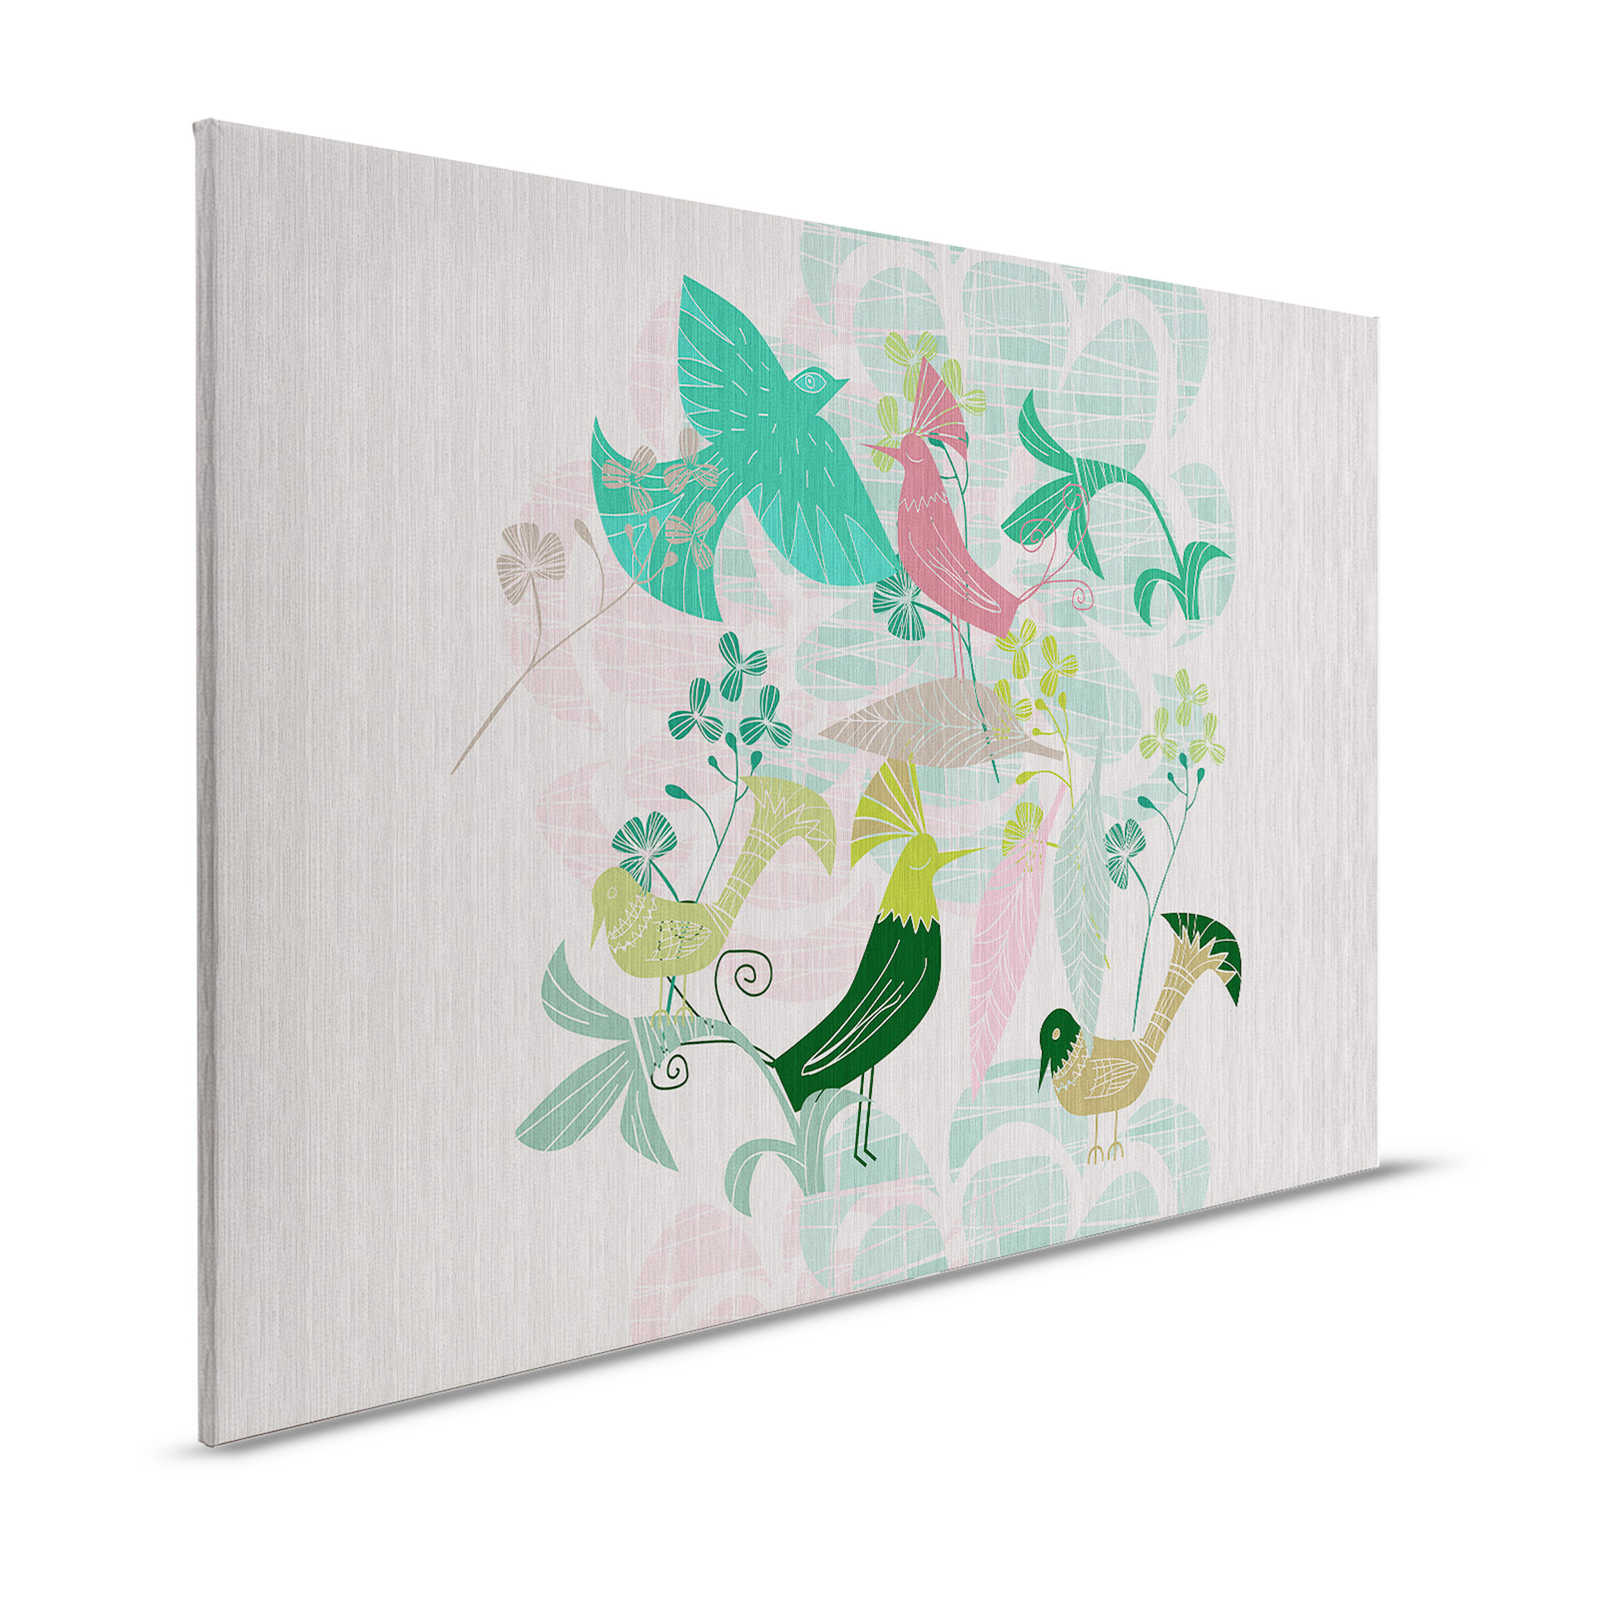 Birdland 3 - Quadro su tela verde e rosa con uccelli in stile retrò - 1,20 m x 0,80 m
